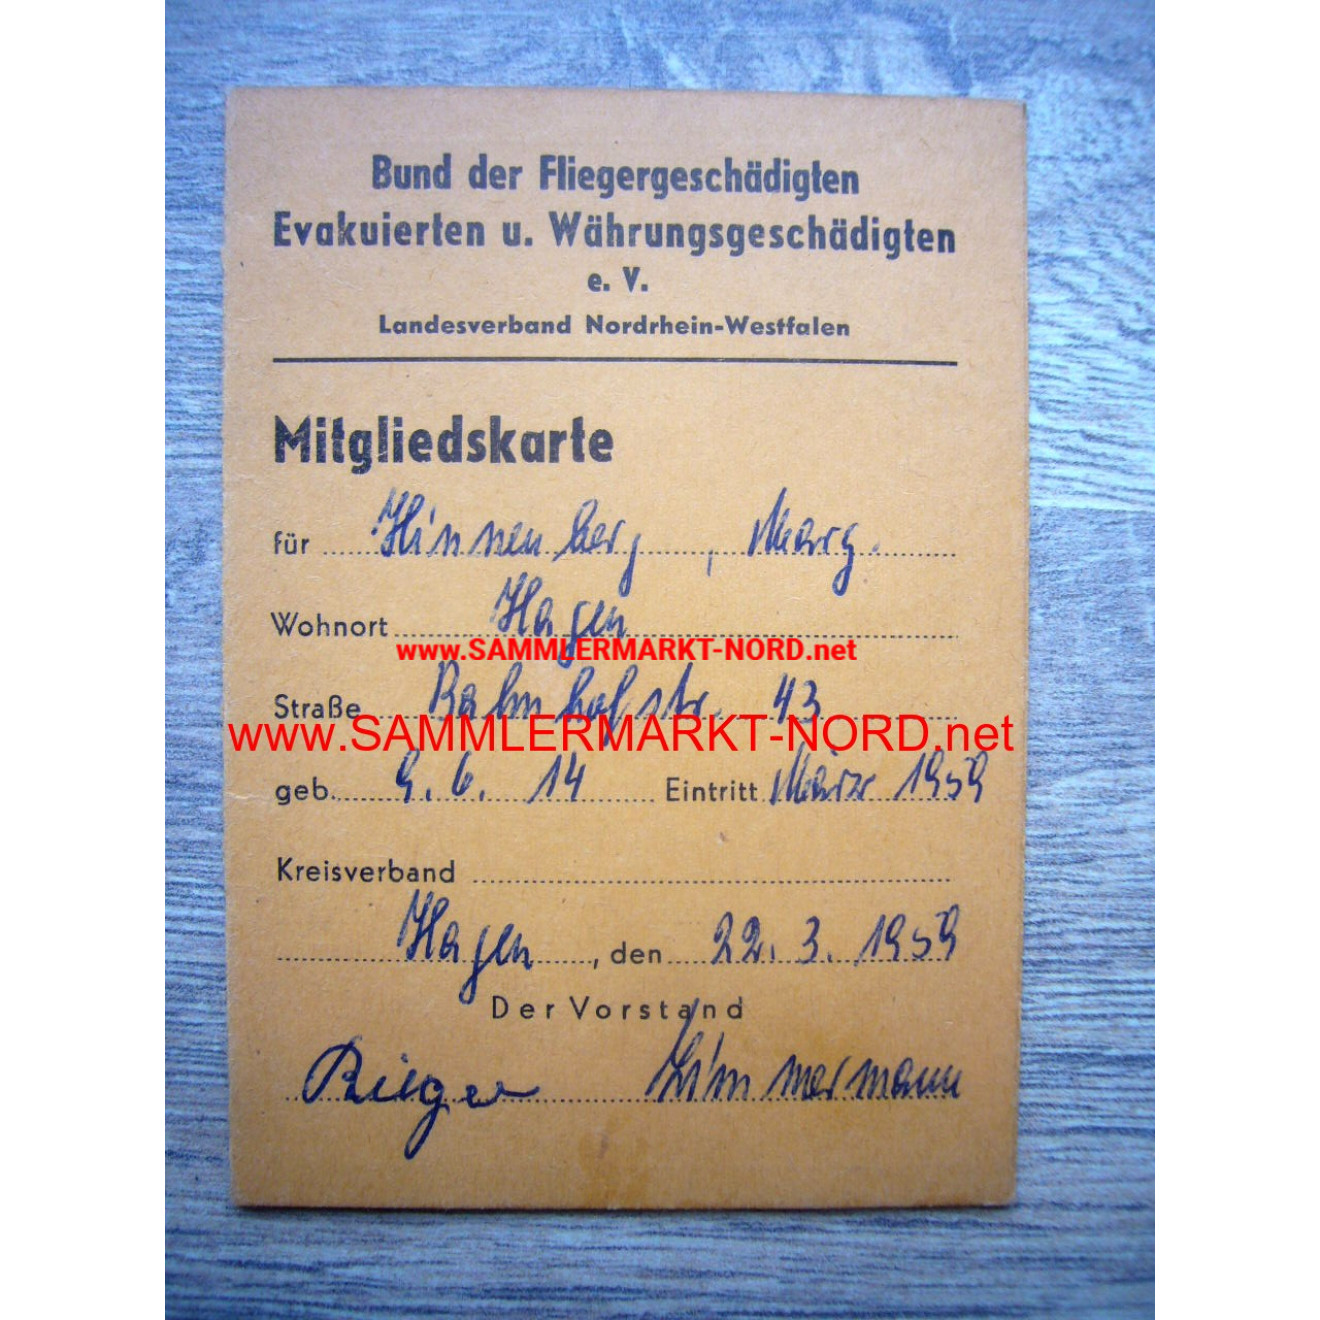 Bund der Fliegergeschädigten usw. - Ausweis 1959